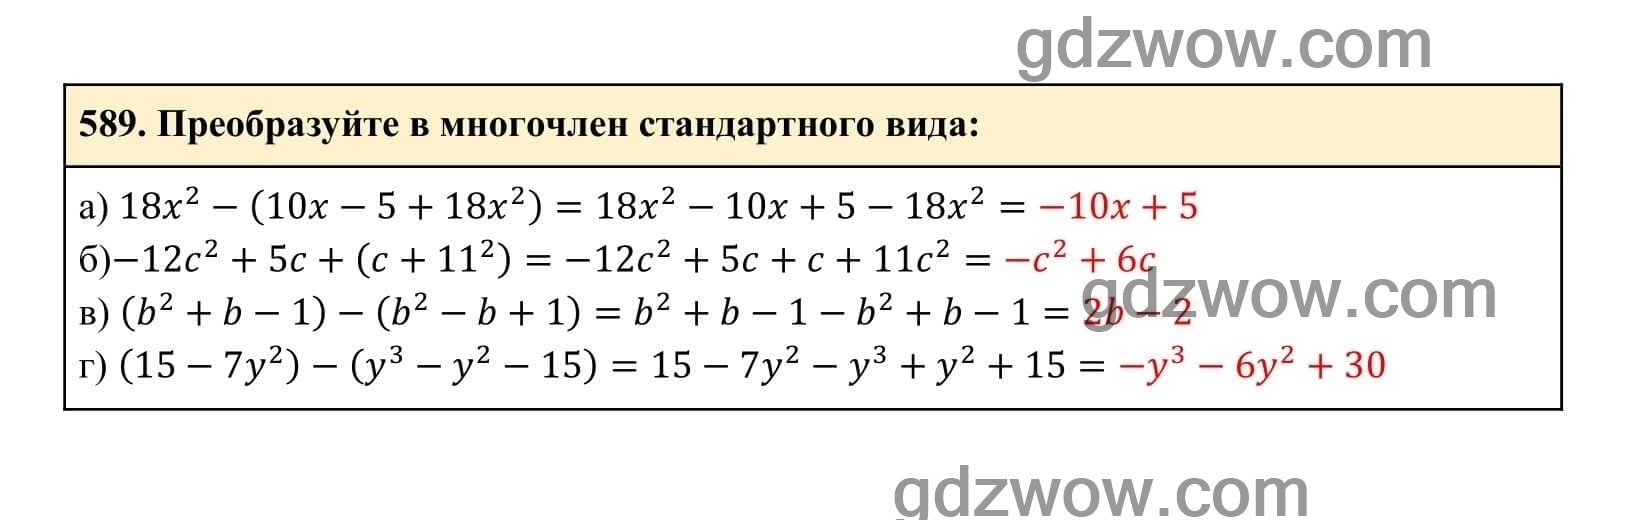 Упражнение 589 - ГДЗ по Алгебре 7 класс Учебник Макарычев (решебник) - GDZwow